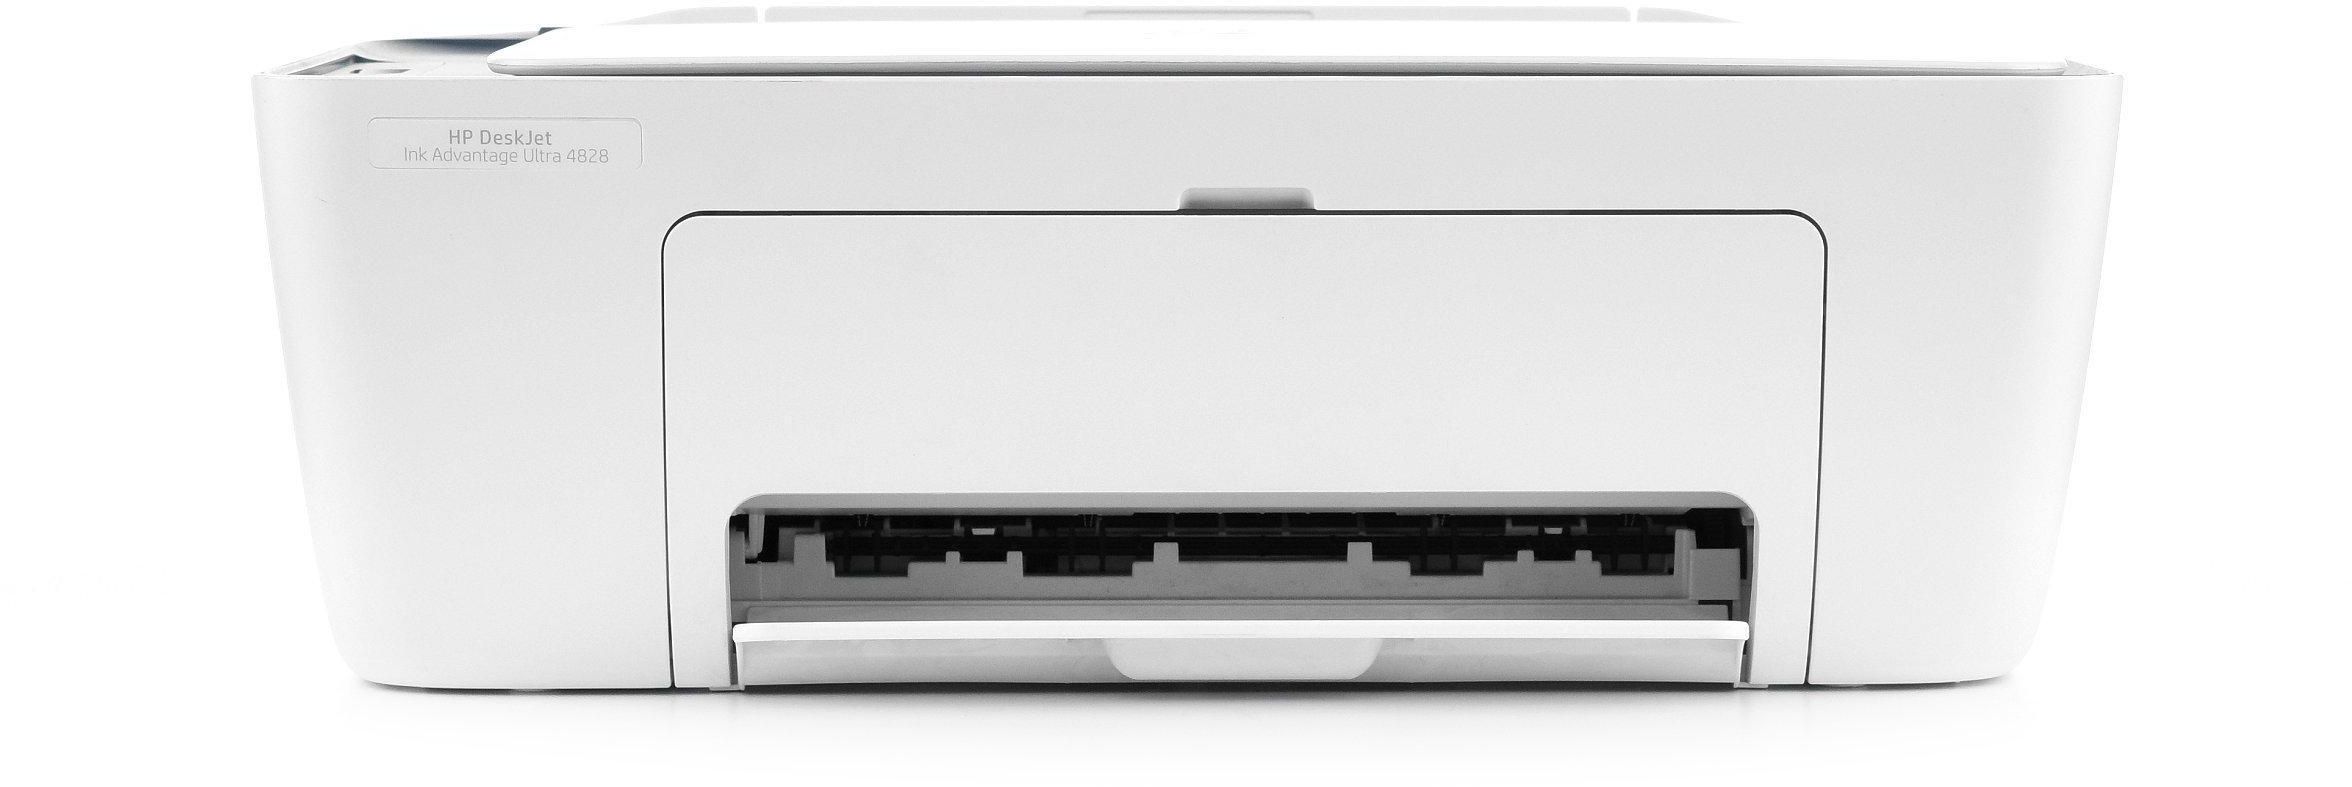 HP DeskJet Ultra 4828 AIO Printer, Print, Copy, Scan, Wireless, White